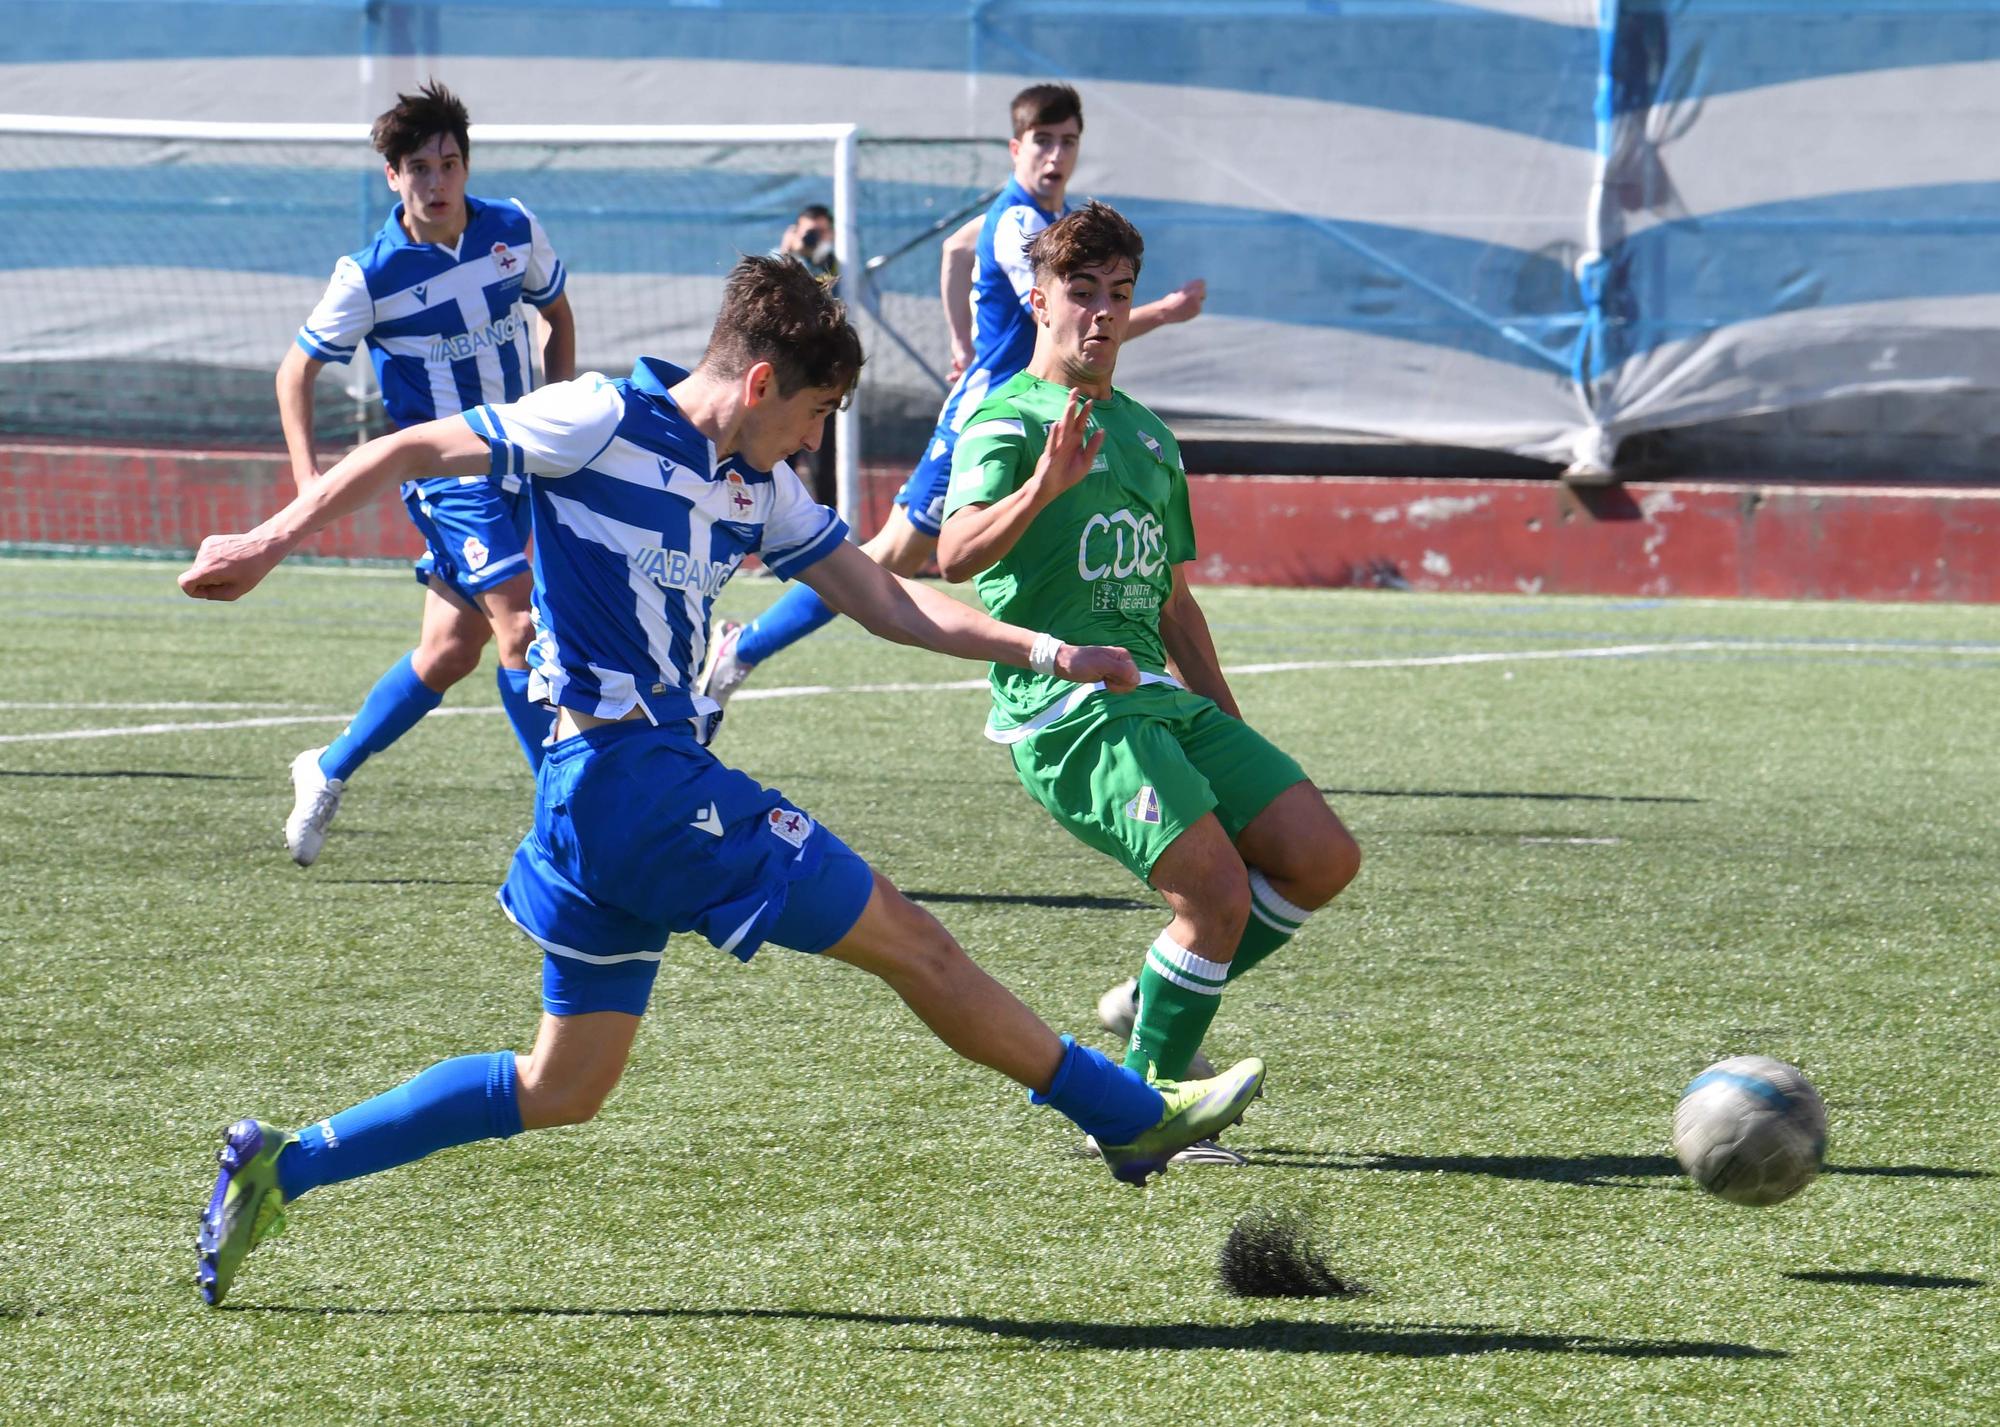 El Dépor juvenil le gana 0-2 al Calasanz y se impone en la fase gallega de la División de Honor